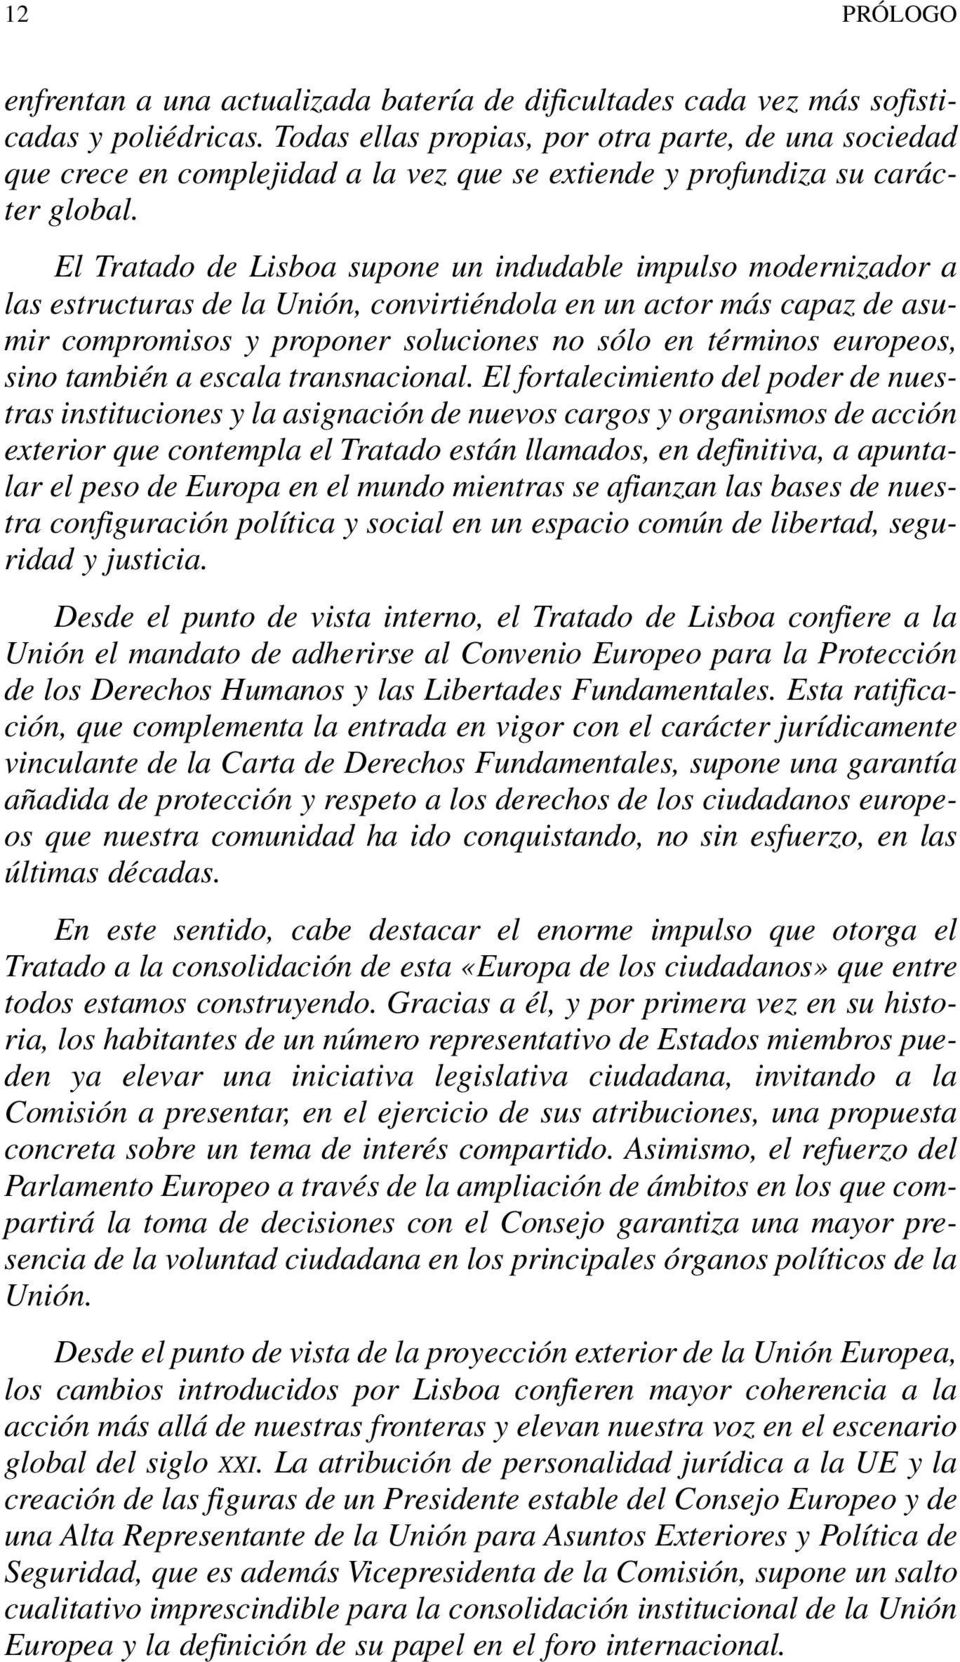 El Tratado de Lisboa supone un indudable impulso modernizador a las estructuras de la Unión, convirtiéndola en un actor más capaz de asumir compromisos y proponer soluciones no sólo en términos